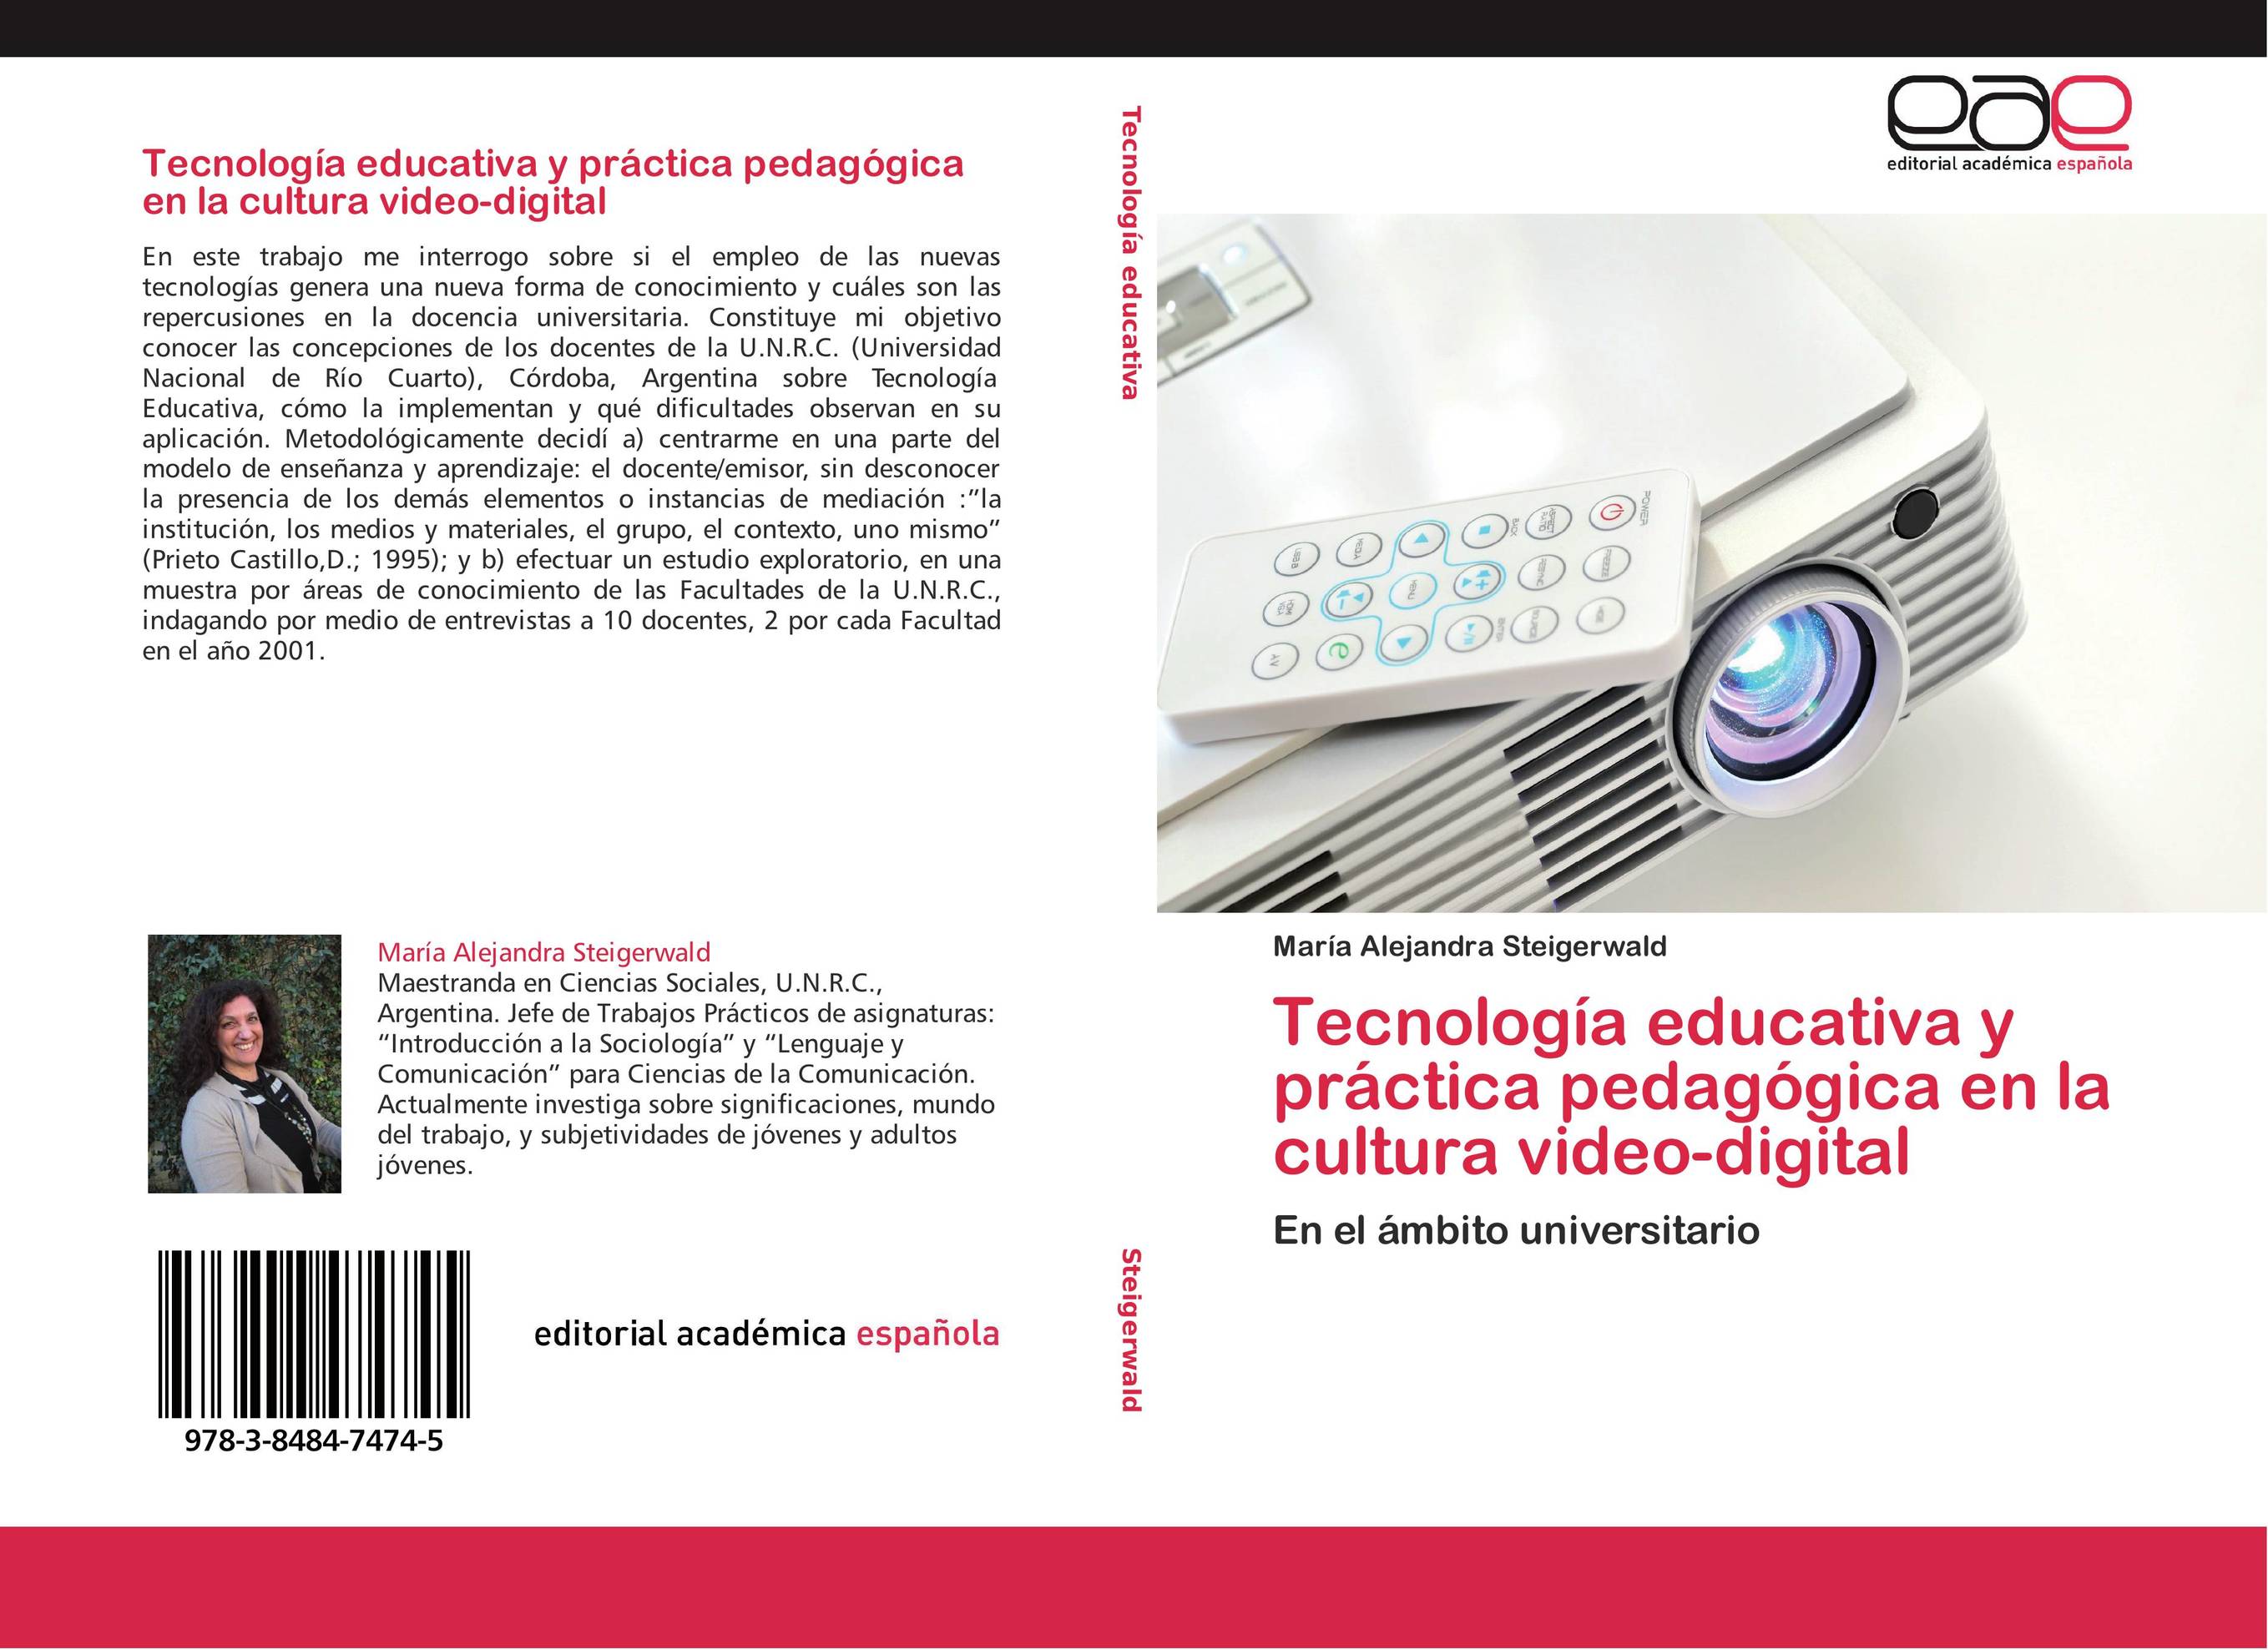 Tecnología educativa y práctica pedagógica en la cultura video-digital